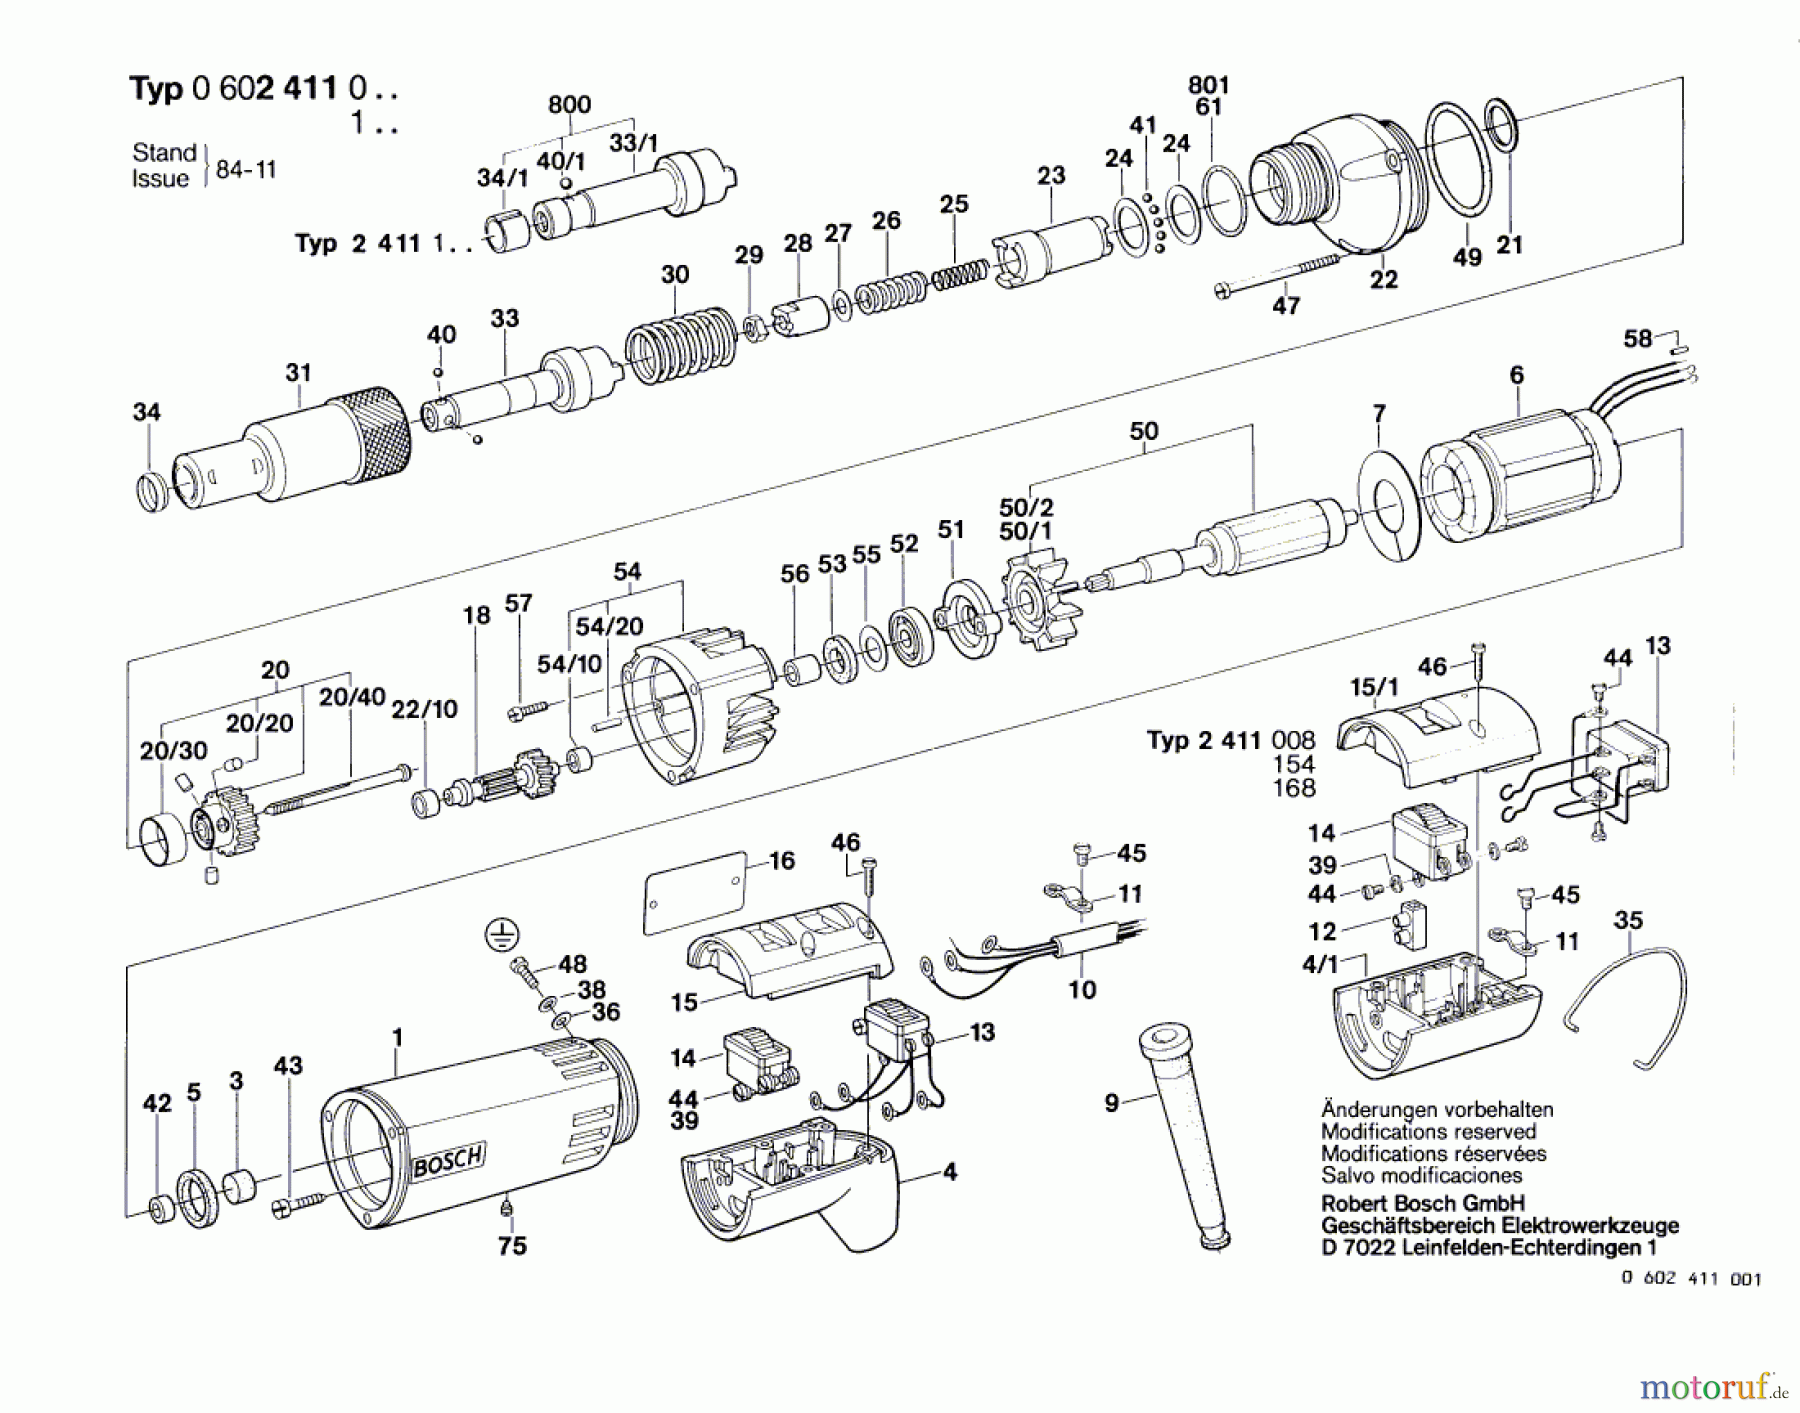  Bosch Werkzeug Hf-Schrauber ---- Seite 1